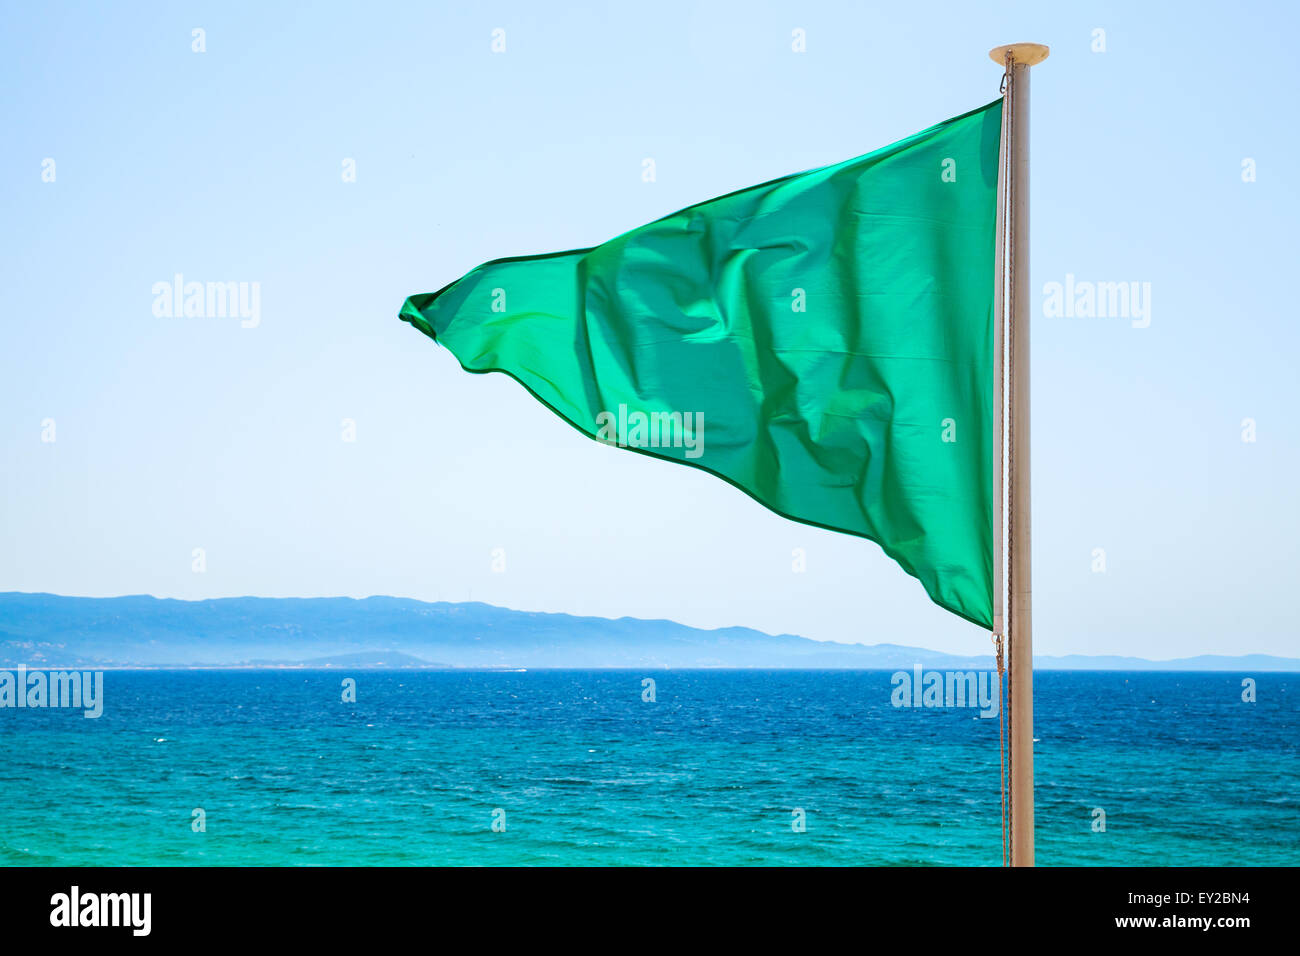 Drapeau vert sur la plage sur fond bleu de l'océan, signifie que la baignade est autorisée Banque D'Images